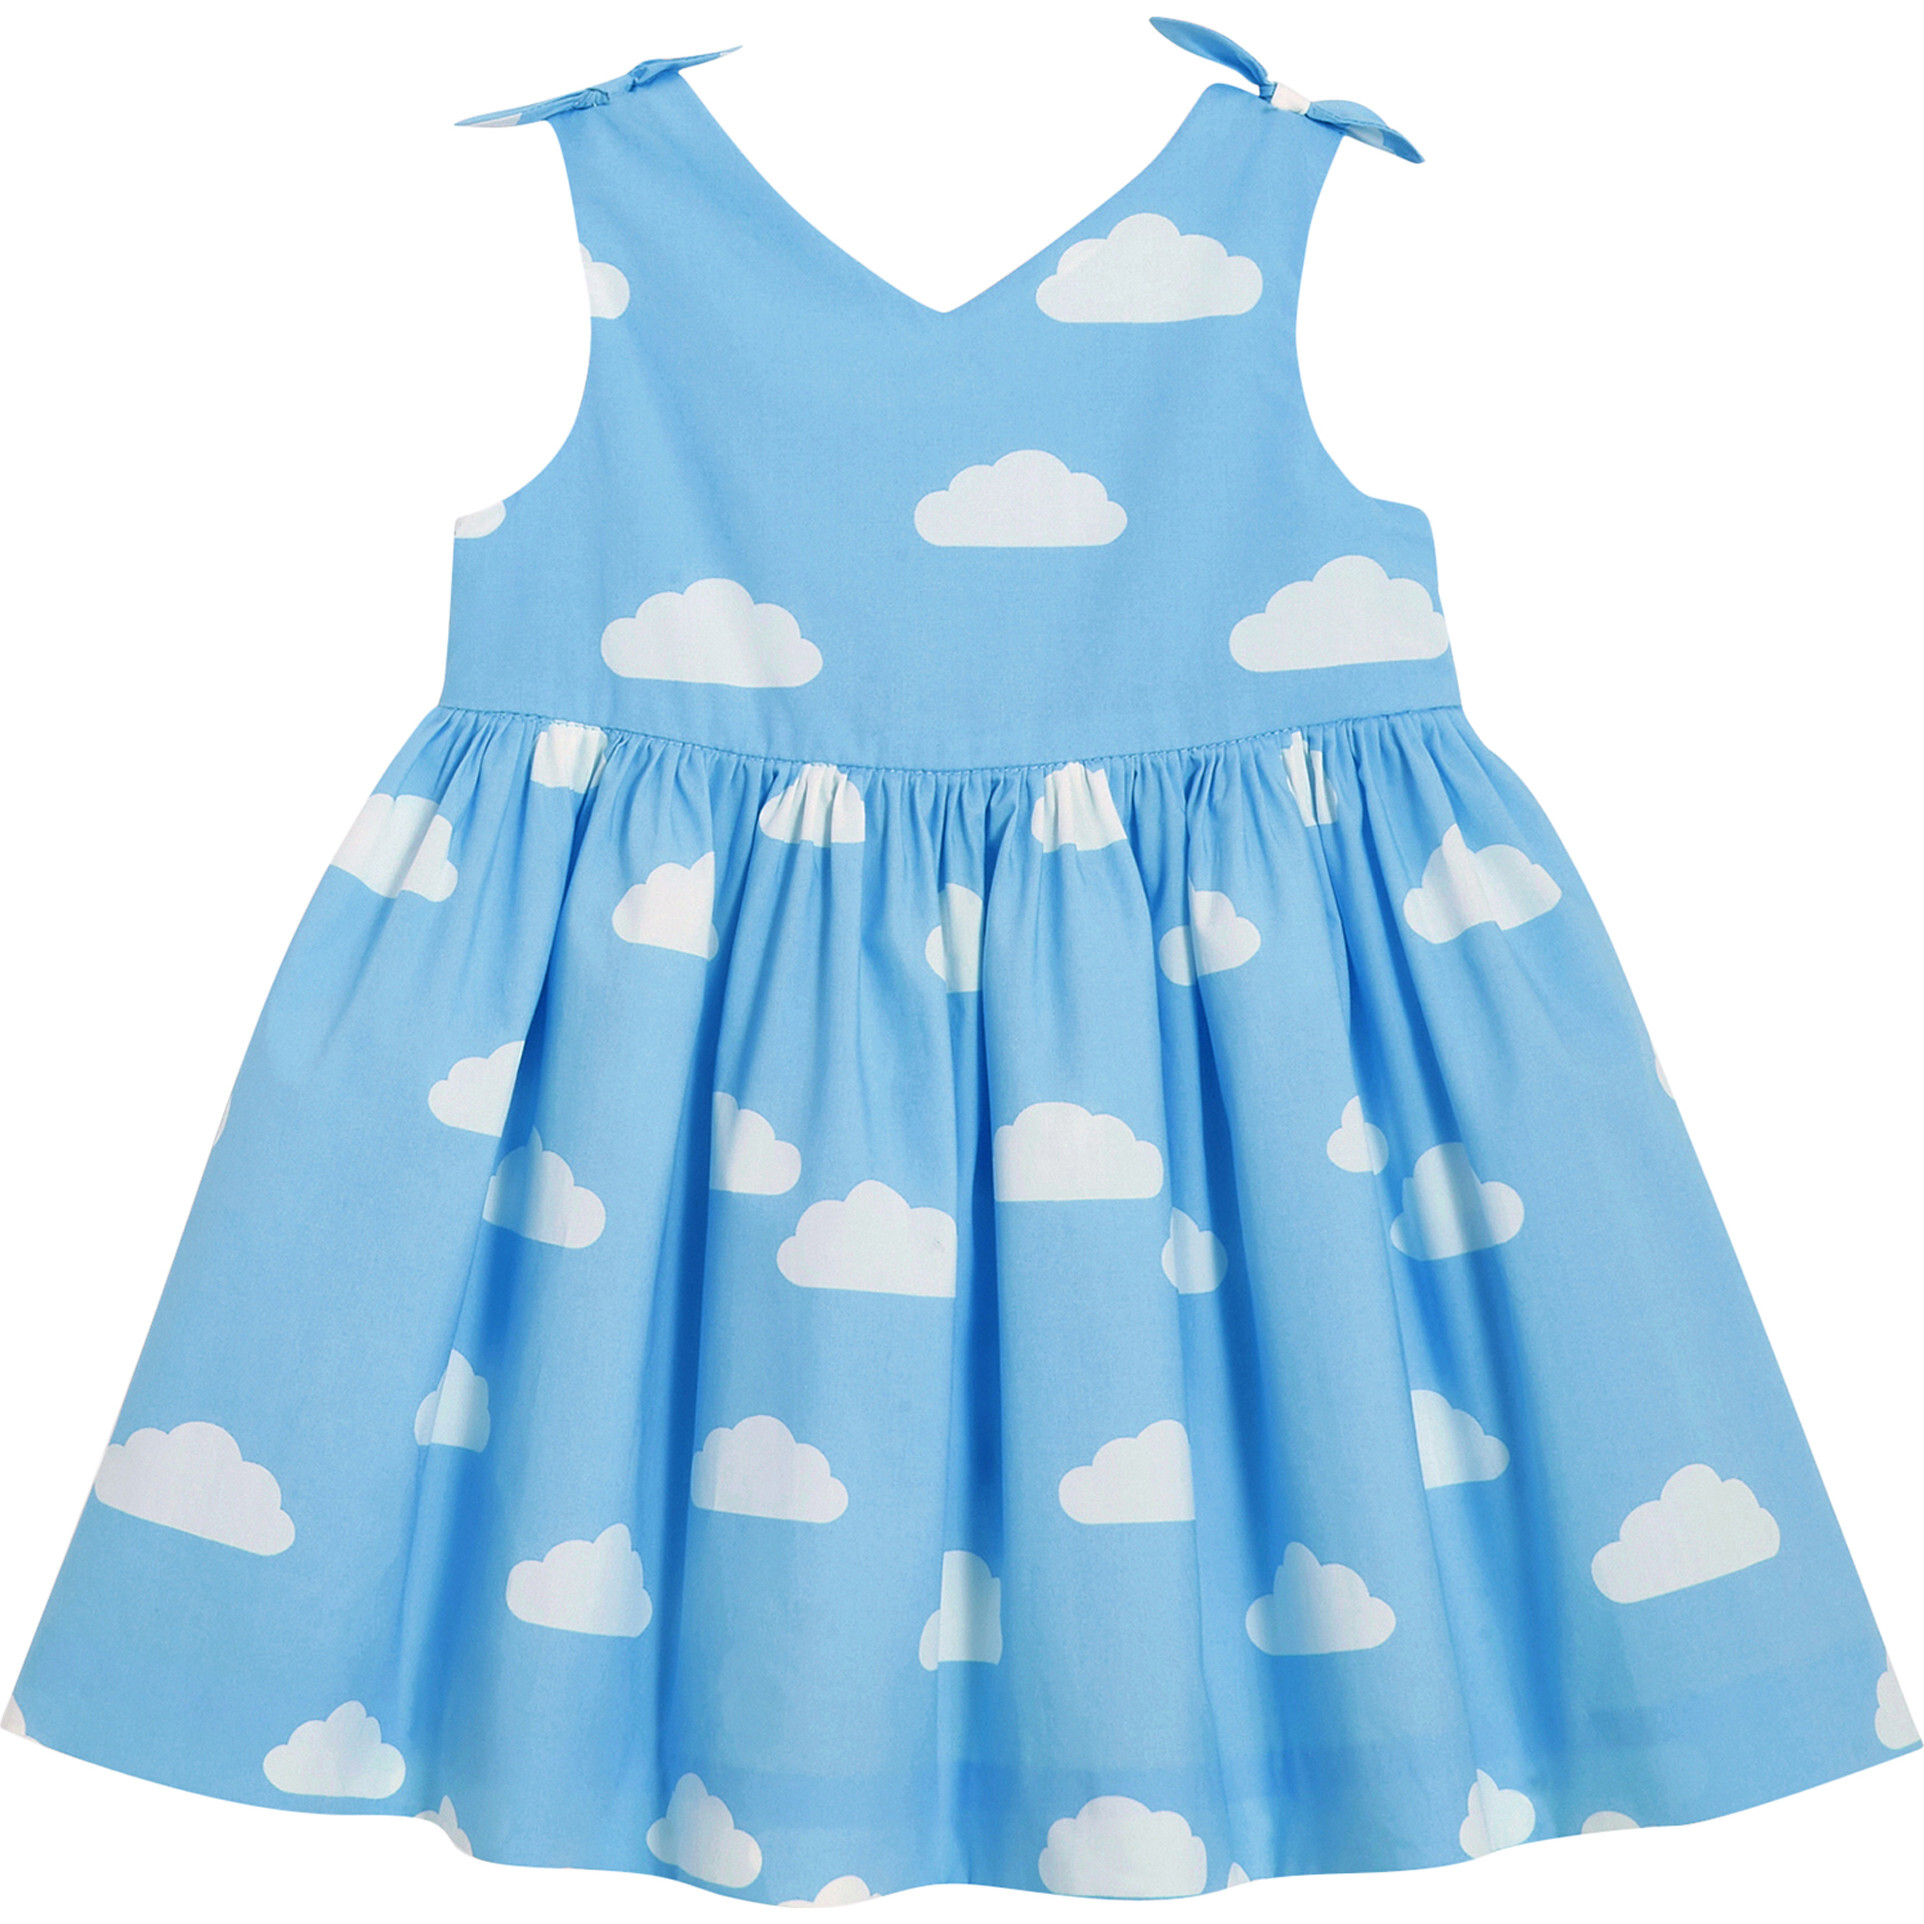 OOAK Blu Monet dress size 3T